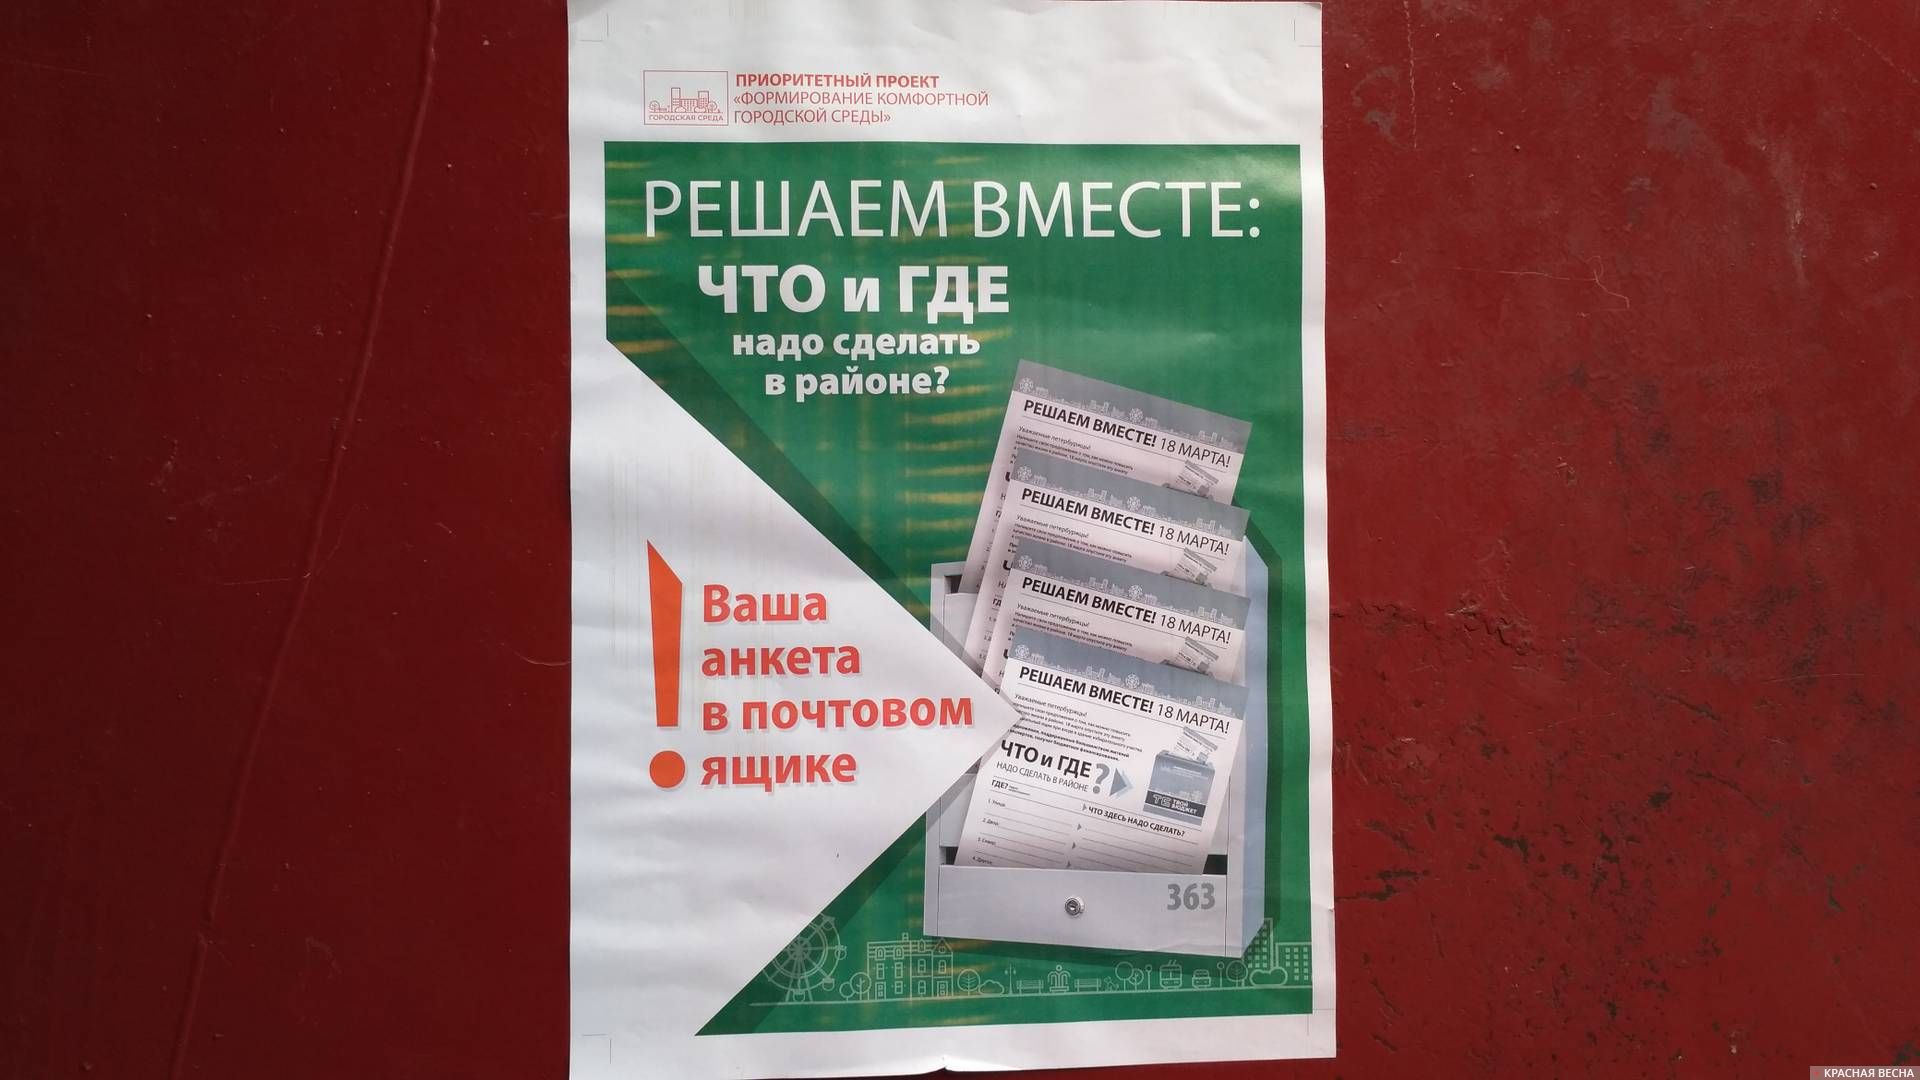 Объявление об анкетах «Решаем вместе», принимаемых на избирательных участках Петербурга в день выборов